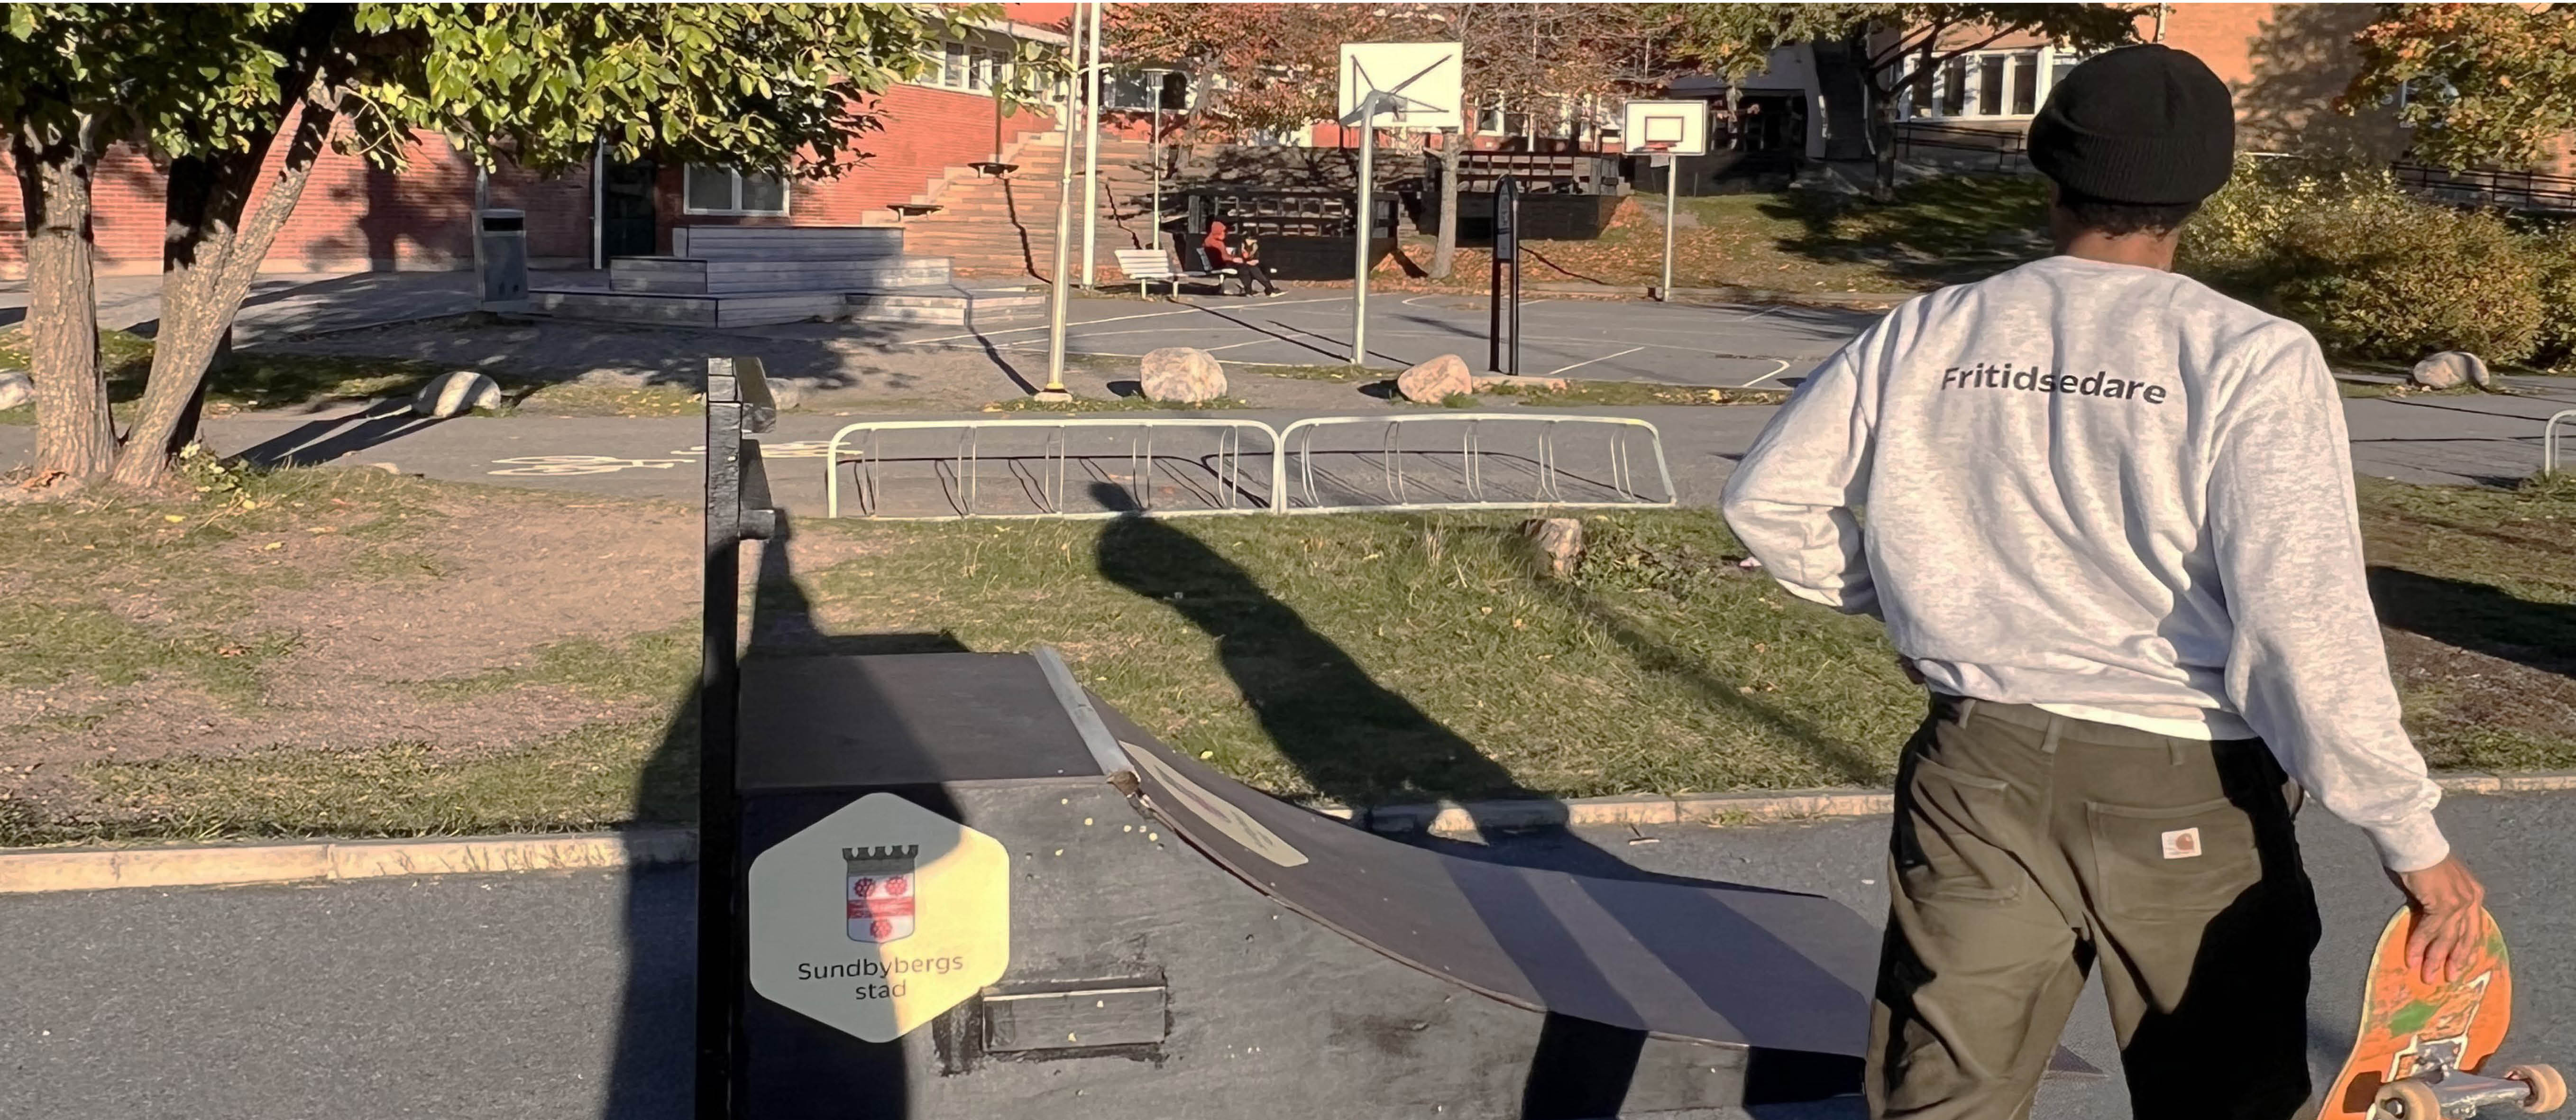 Fritidsledare som bär en skateboard bredvid en ramp